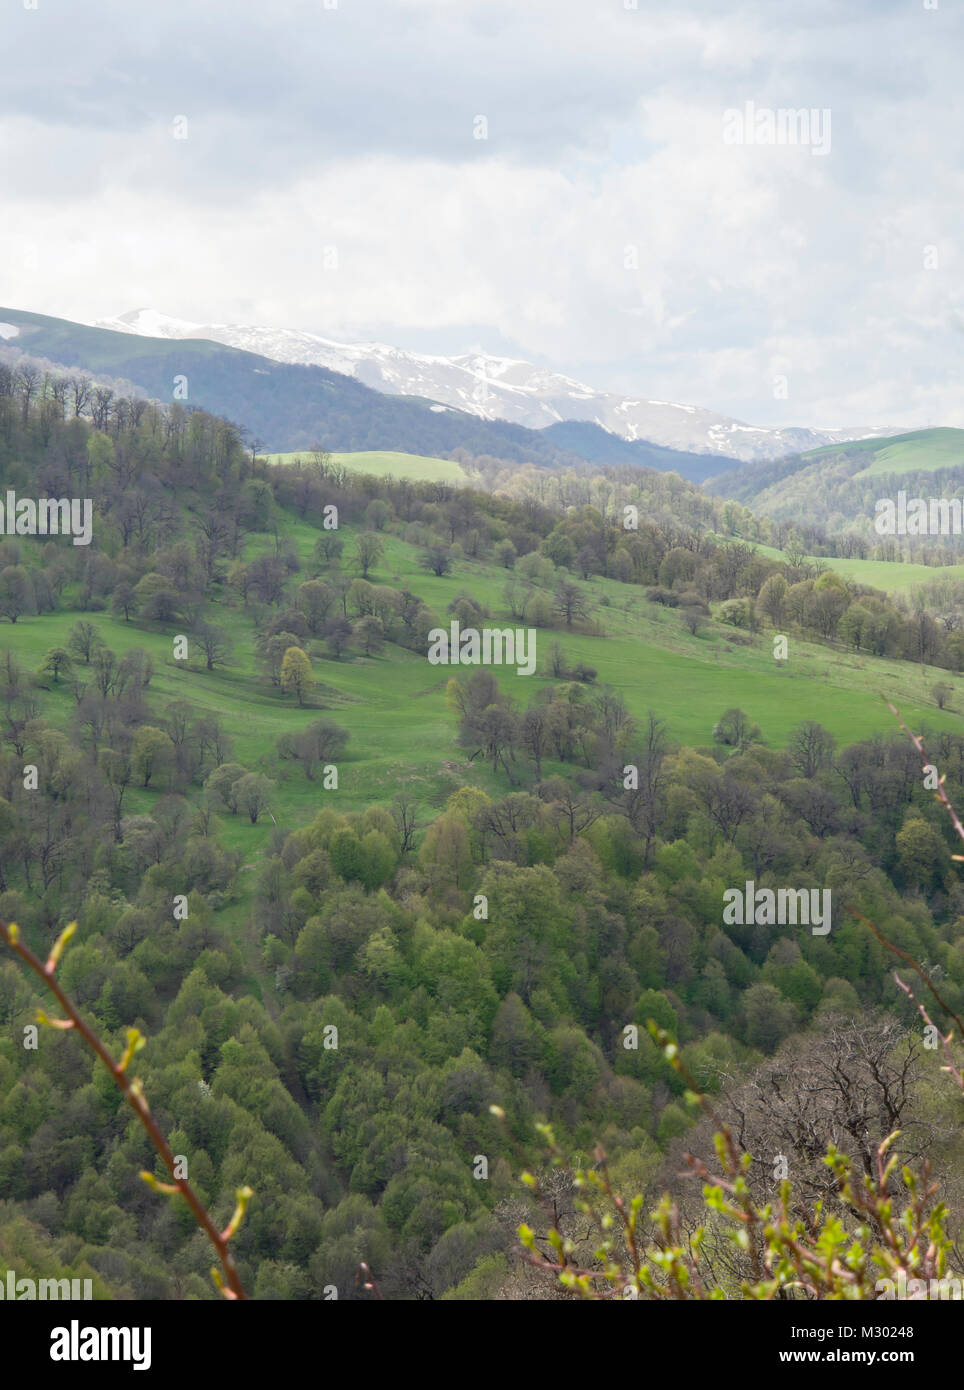 Le printemps à et autour de l'Arménie dans le Parc National de Dilijan une zone appréciée par les randonneurs, une variété d'arbres à feuilles caduques dans différents verts Banque D'Images